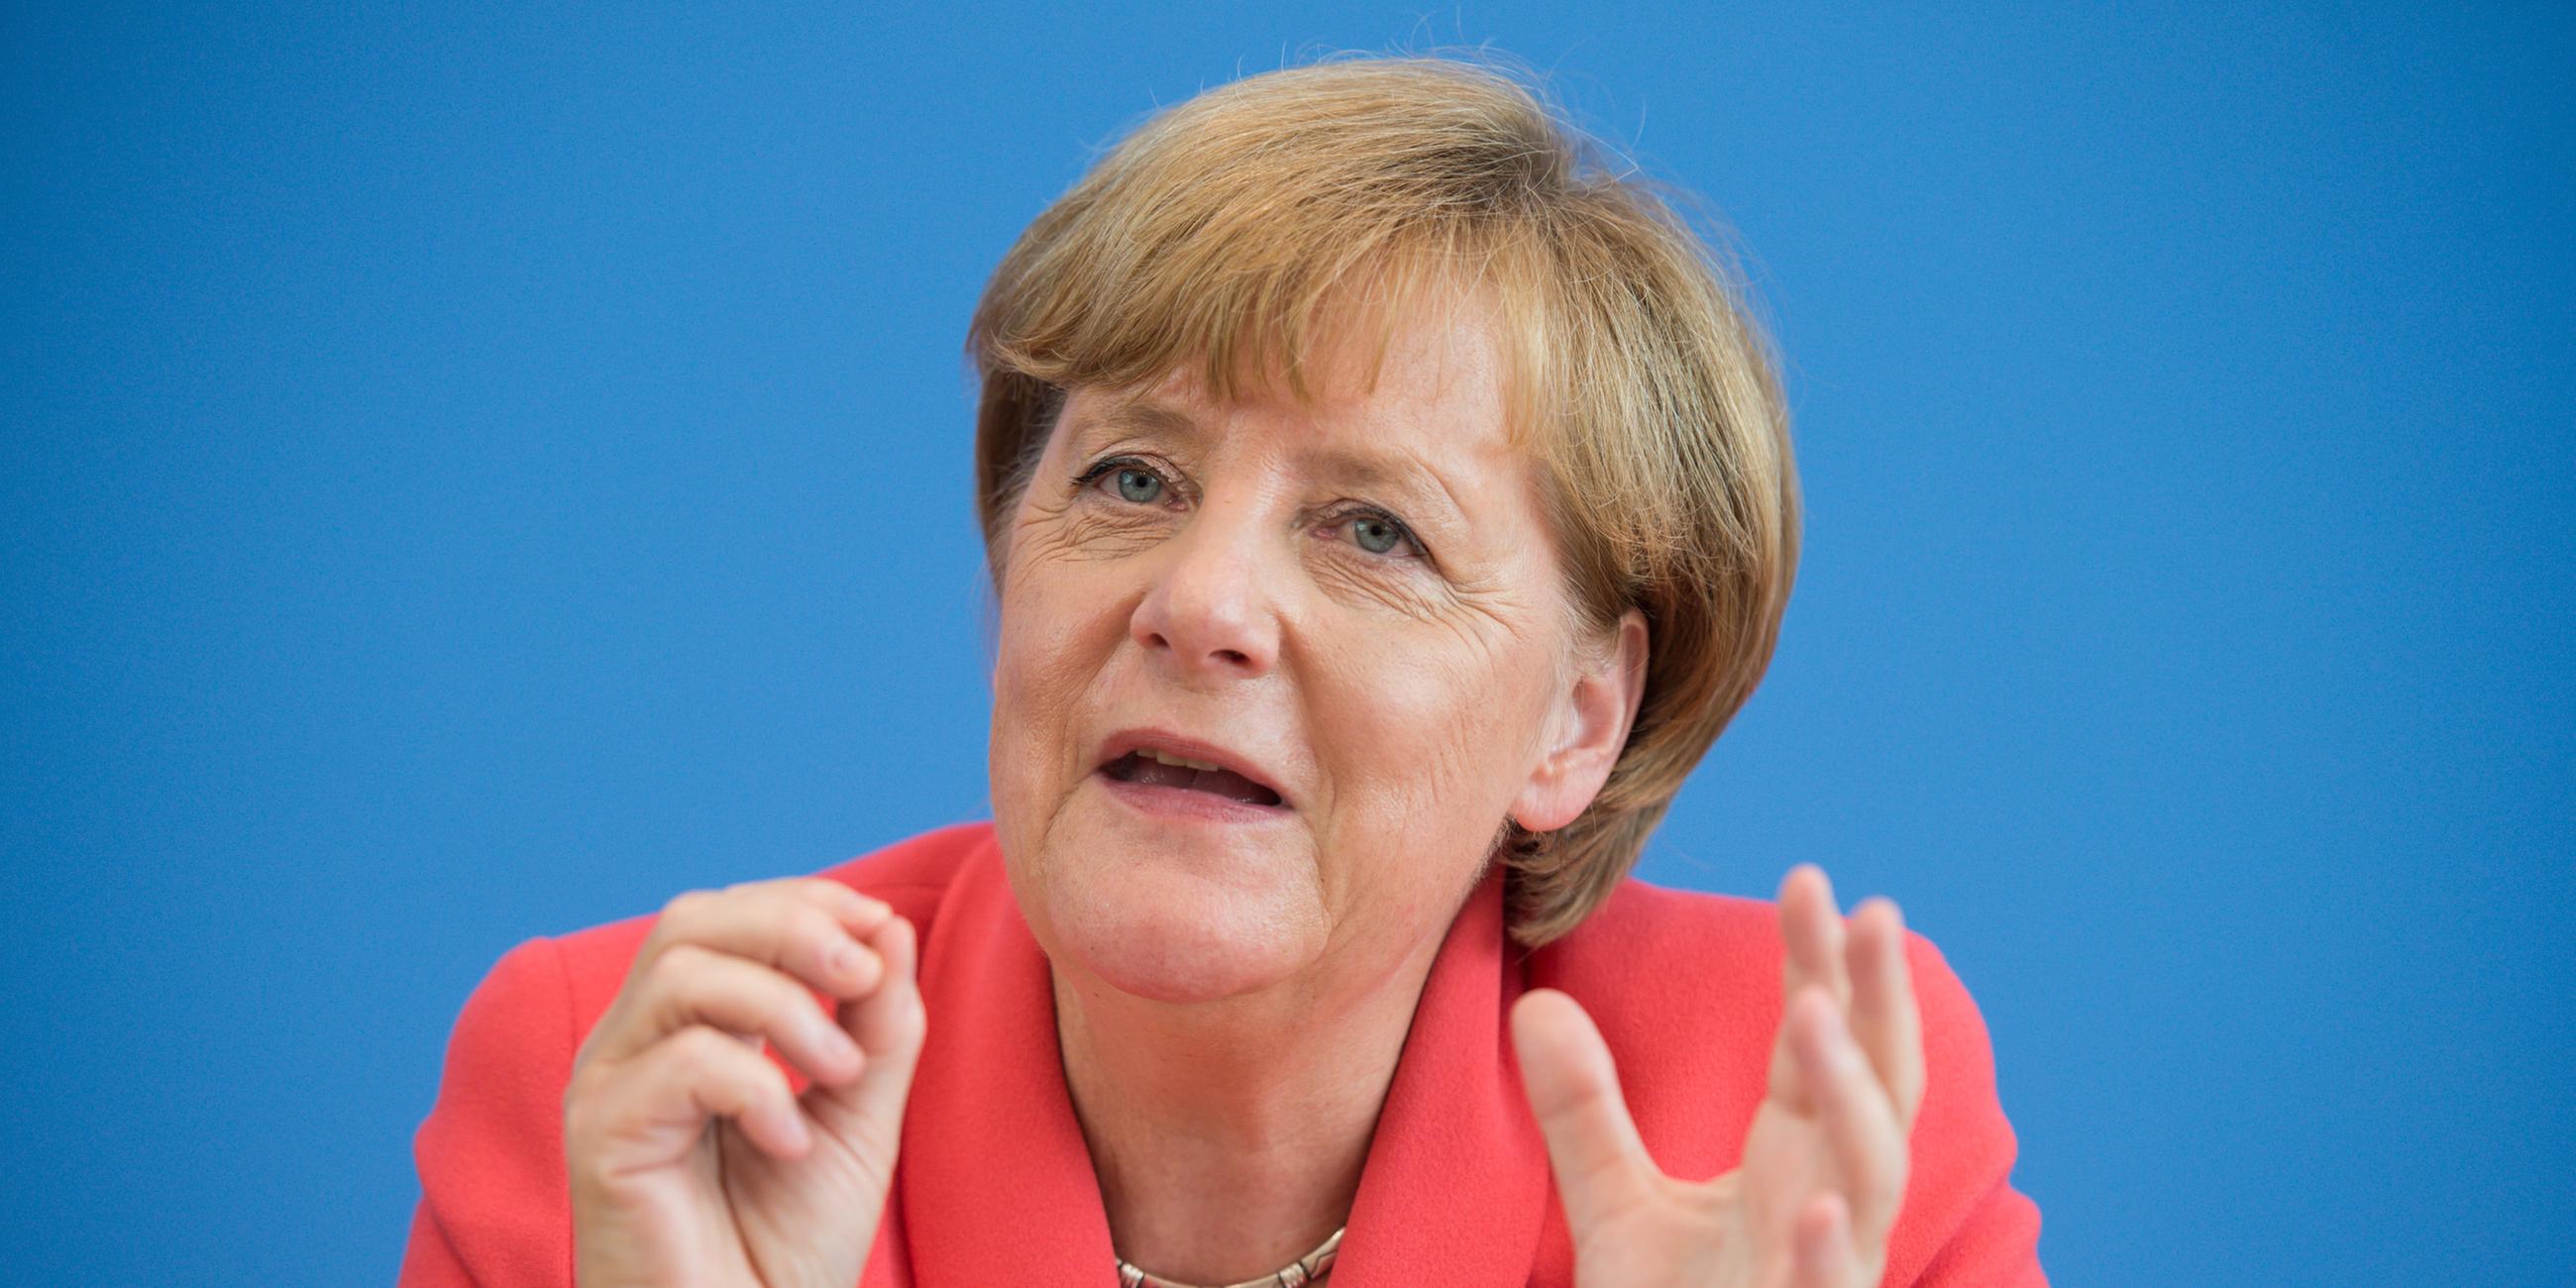 Angela Merkel spricht auf der Pressekonferenz am 31. August 2015.